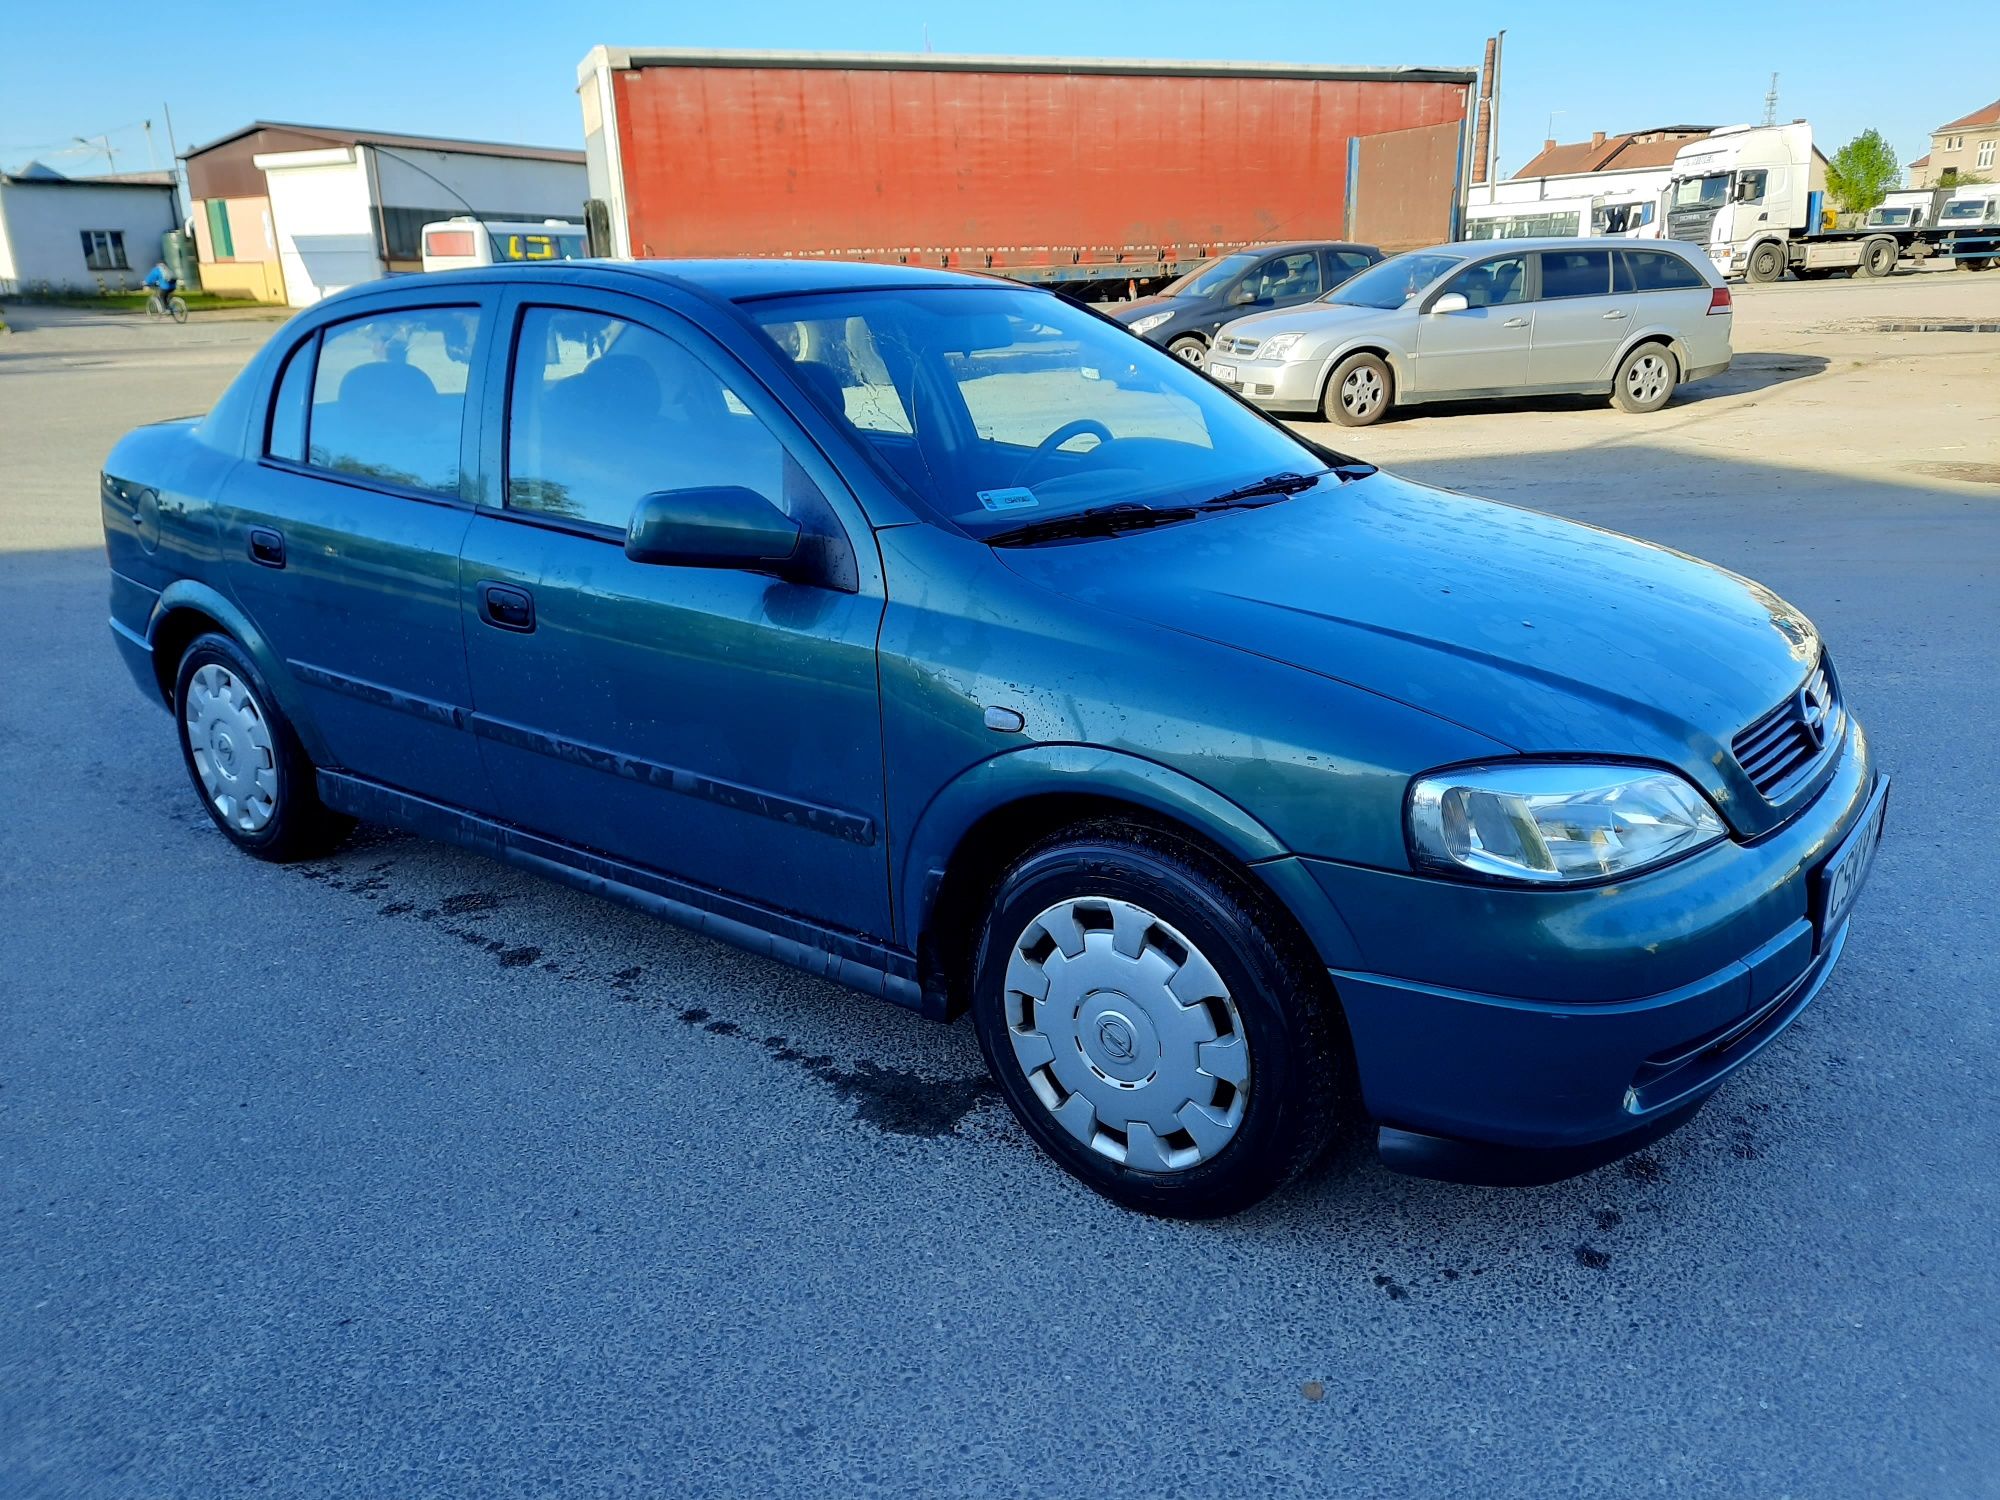 Opel Astra G 1.6 2003 ważne opłaty